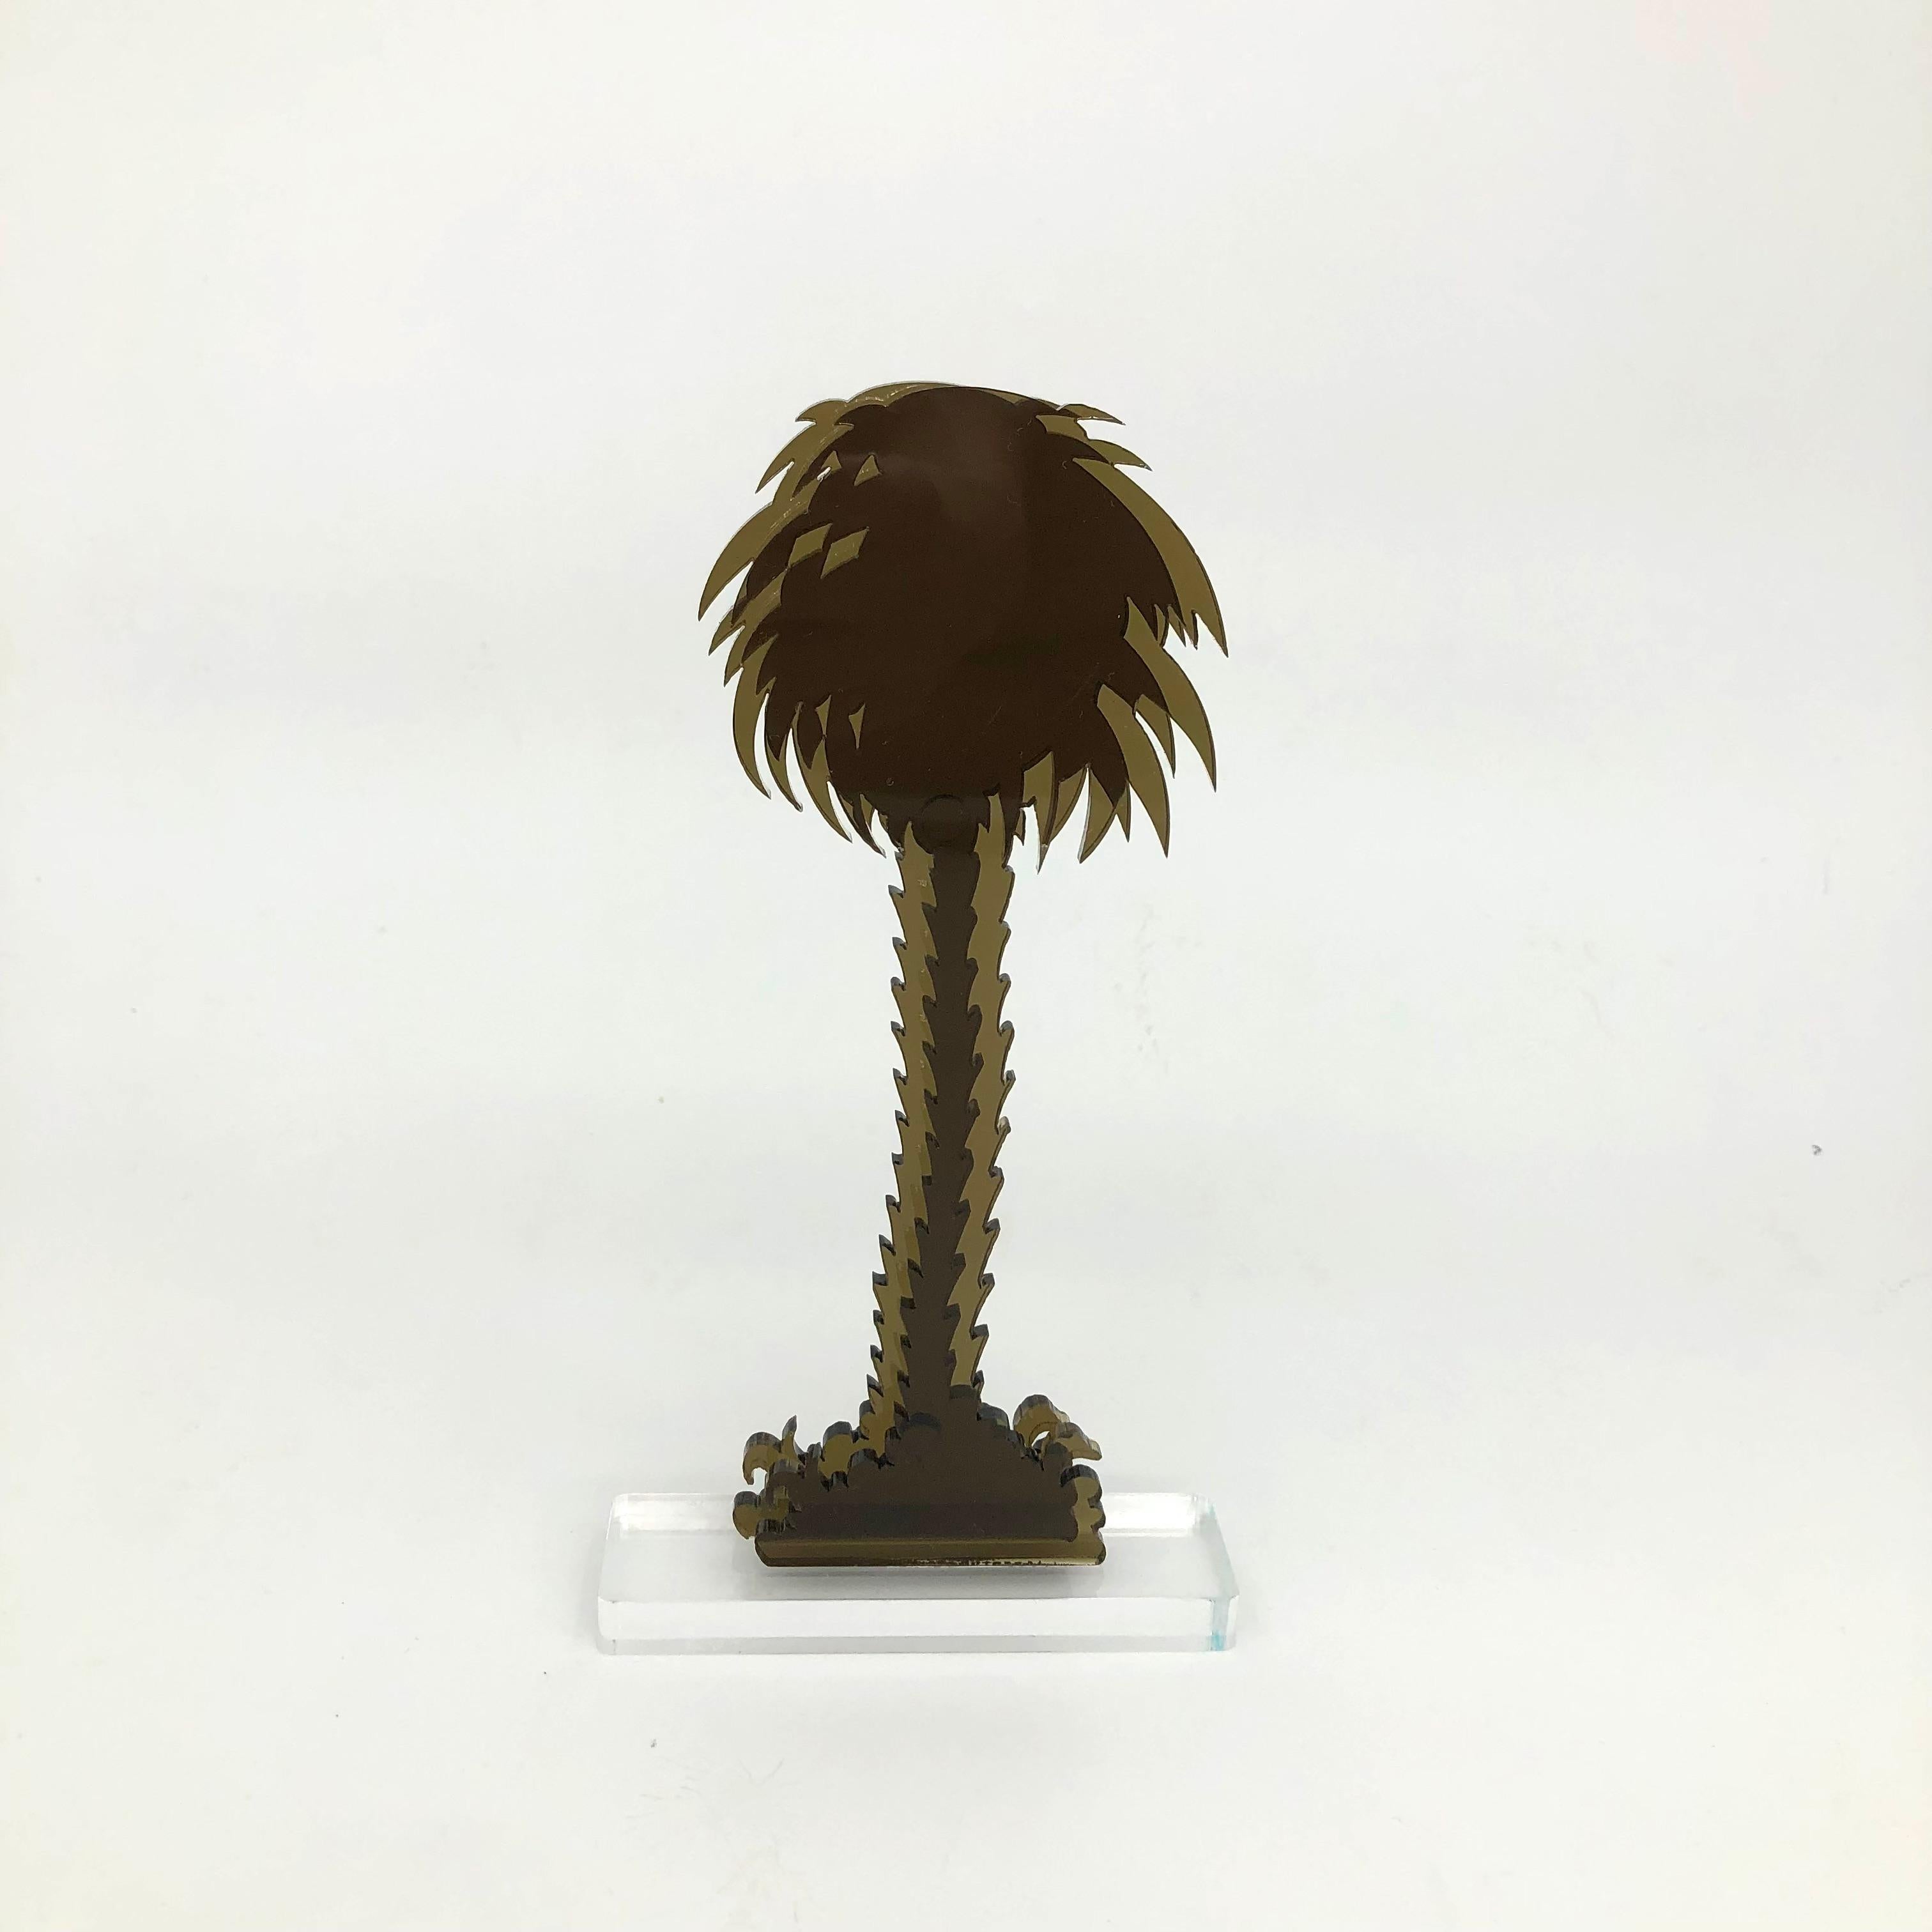 Gino MAROTTA (1935-2012)
Palma artificiale, 2010
Edition Artbeat arrêtée
Sculpture, multiple en méthacrylate coloré bronze et découpé. Signé sur la base.
Haut. : 19 cm Long. : 10 cm

Gino MAROTTA (1935-2012)
Palma artificiale, 2010
Edition Artbeat,